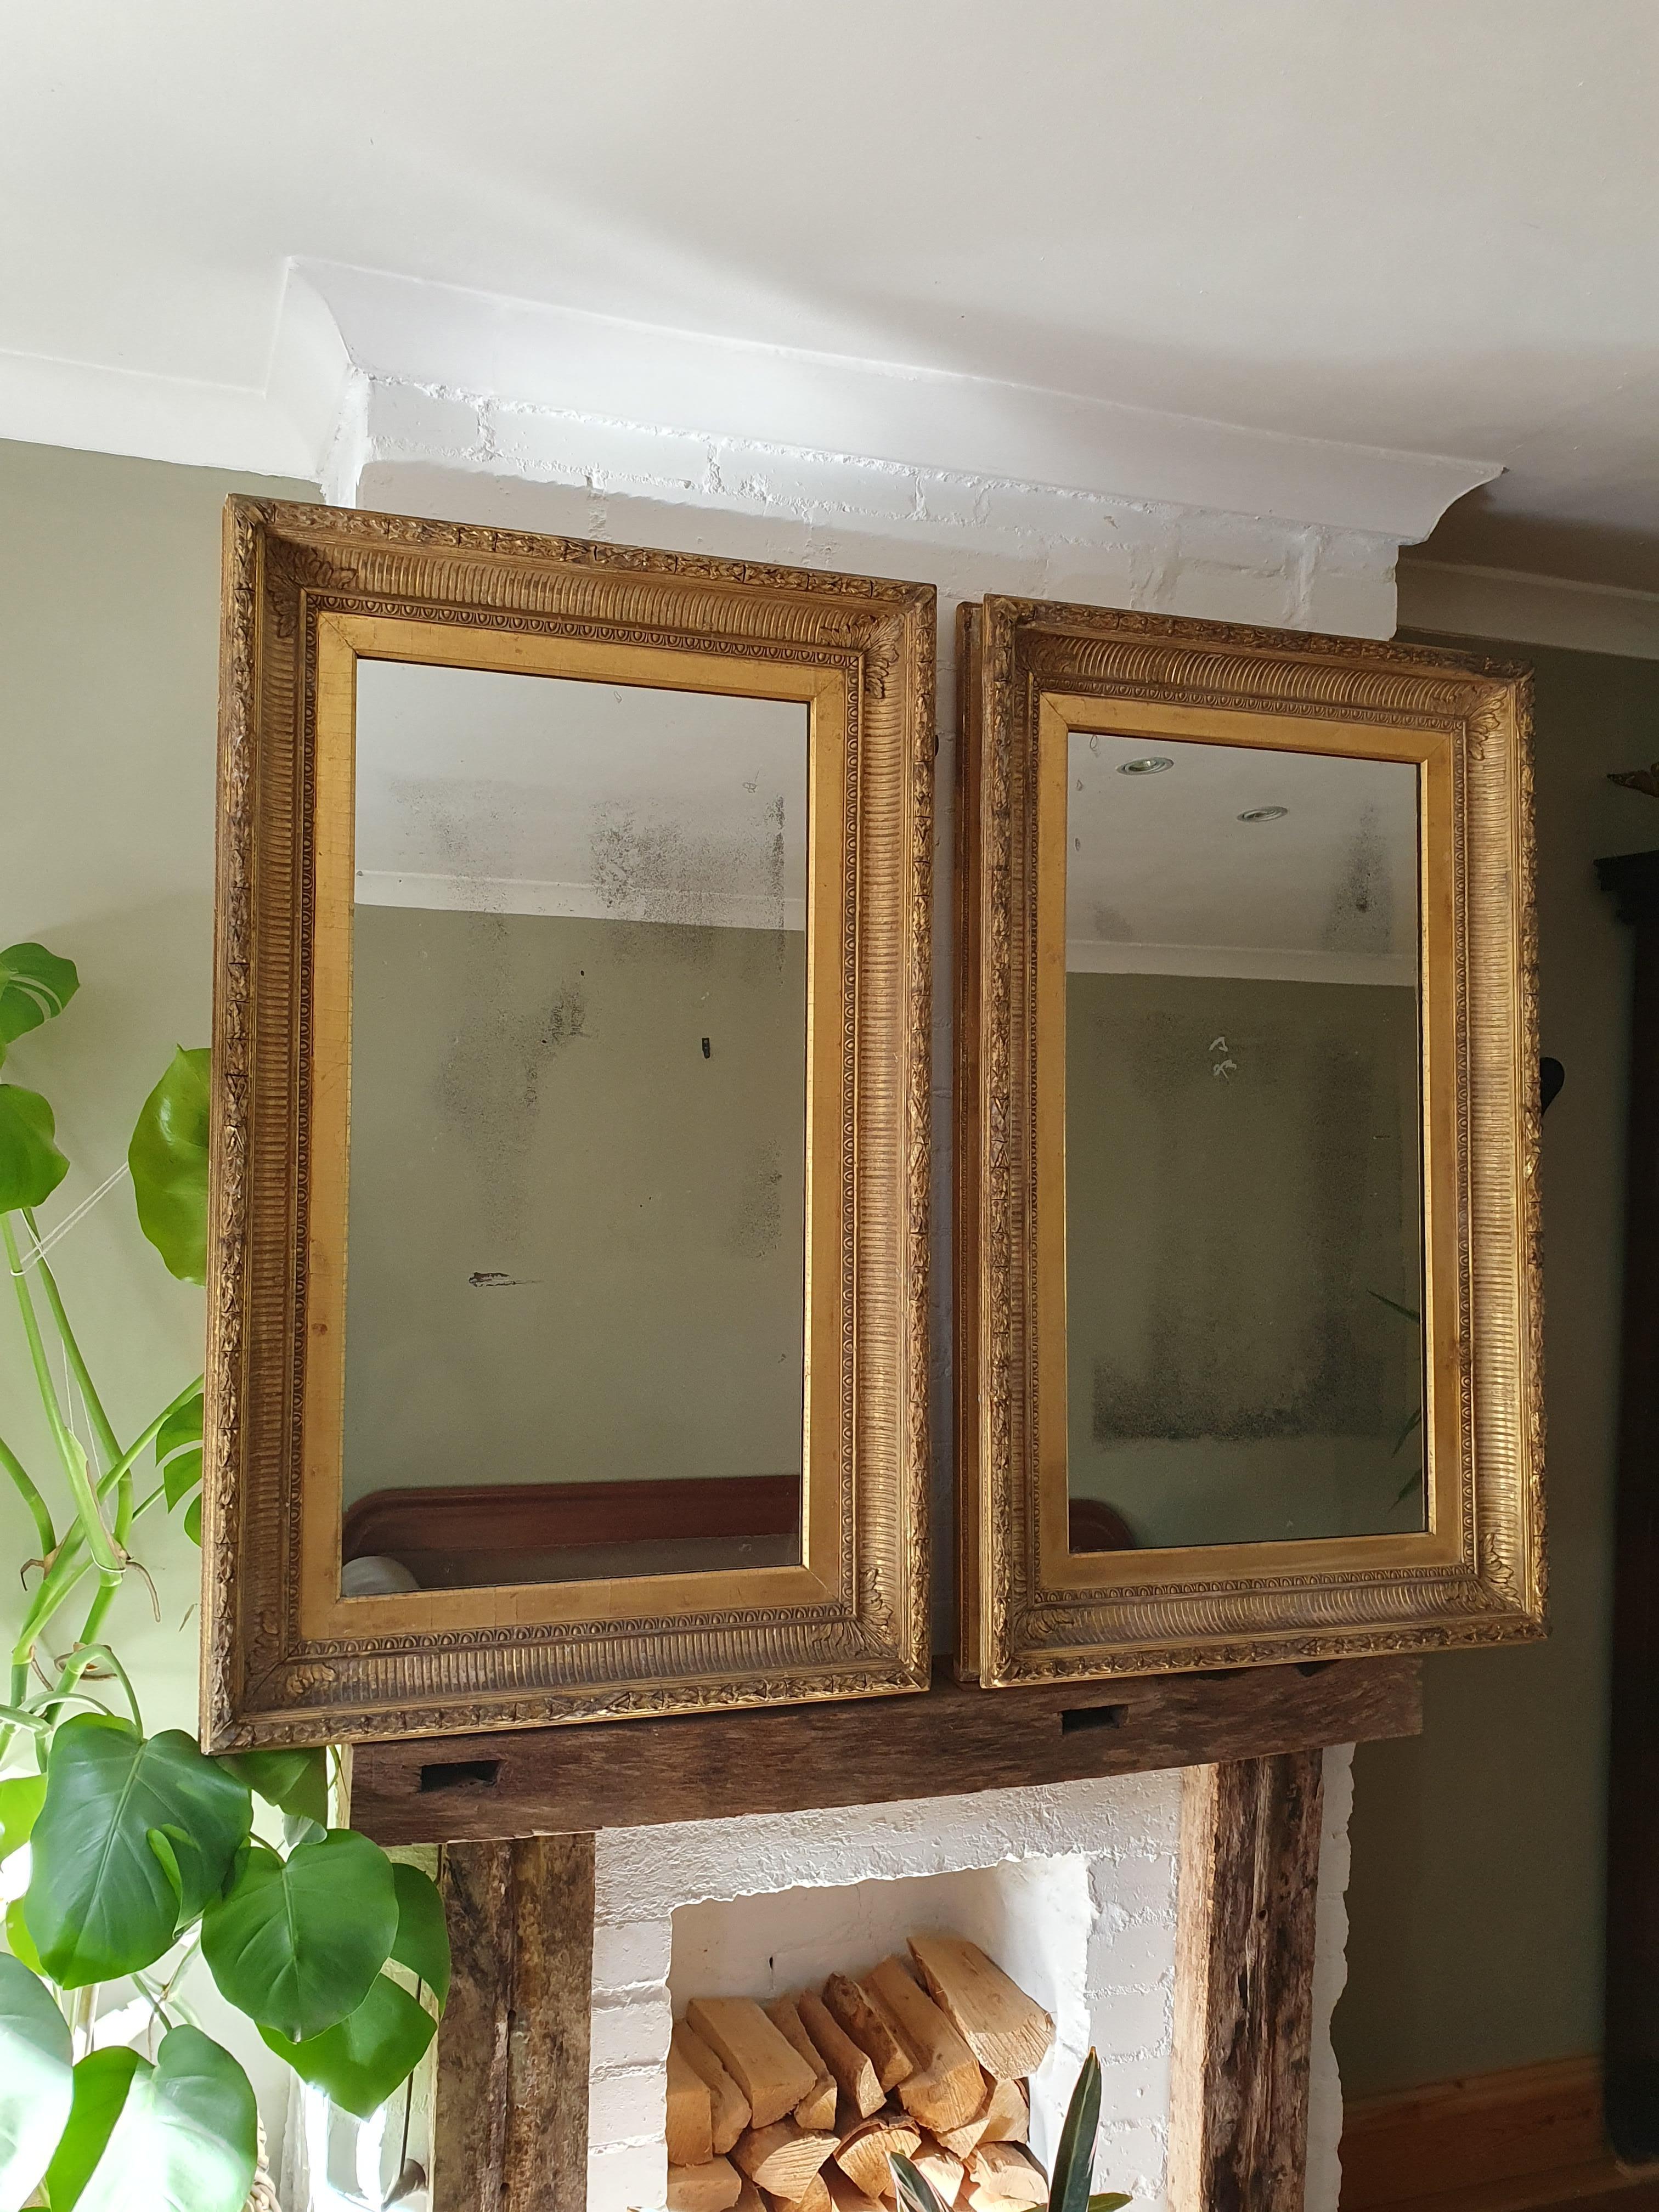 British Pair Of 19th Century Wall Mirrors